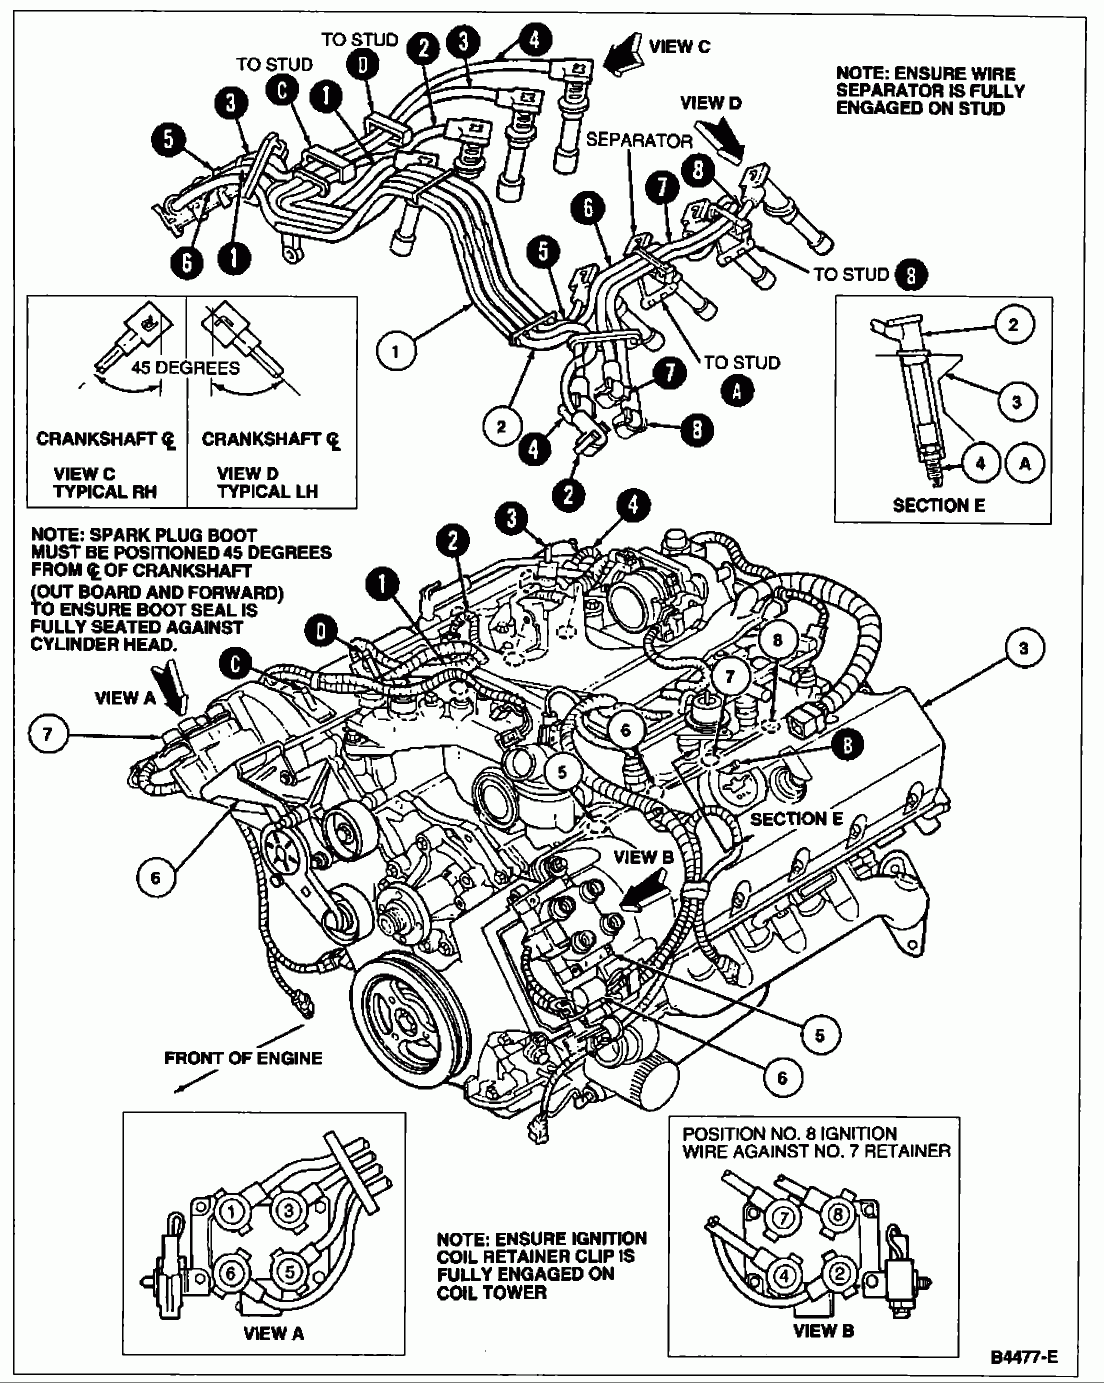 2001 4.6 Ford Firing Order | Ford Firing Order